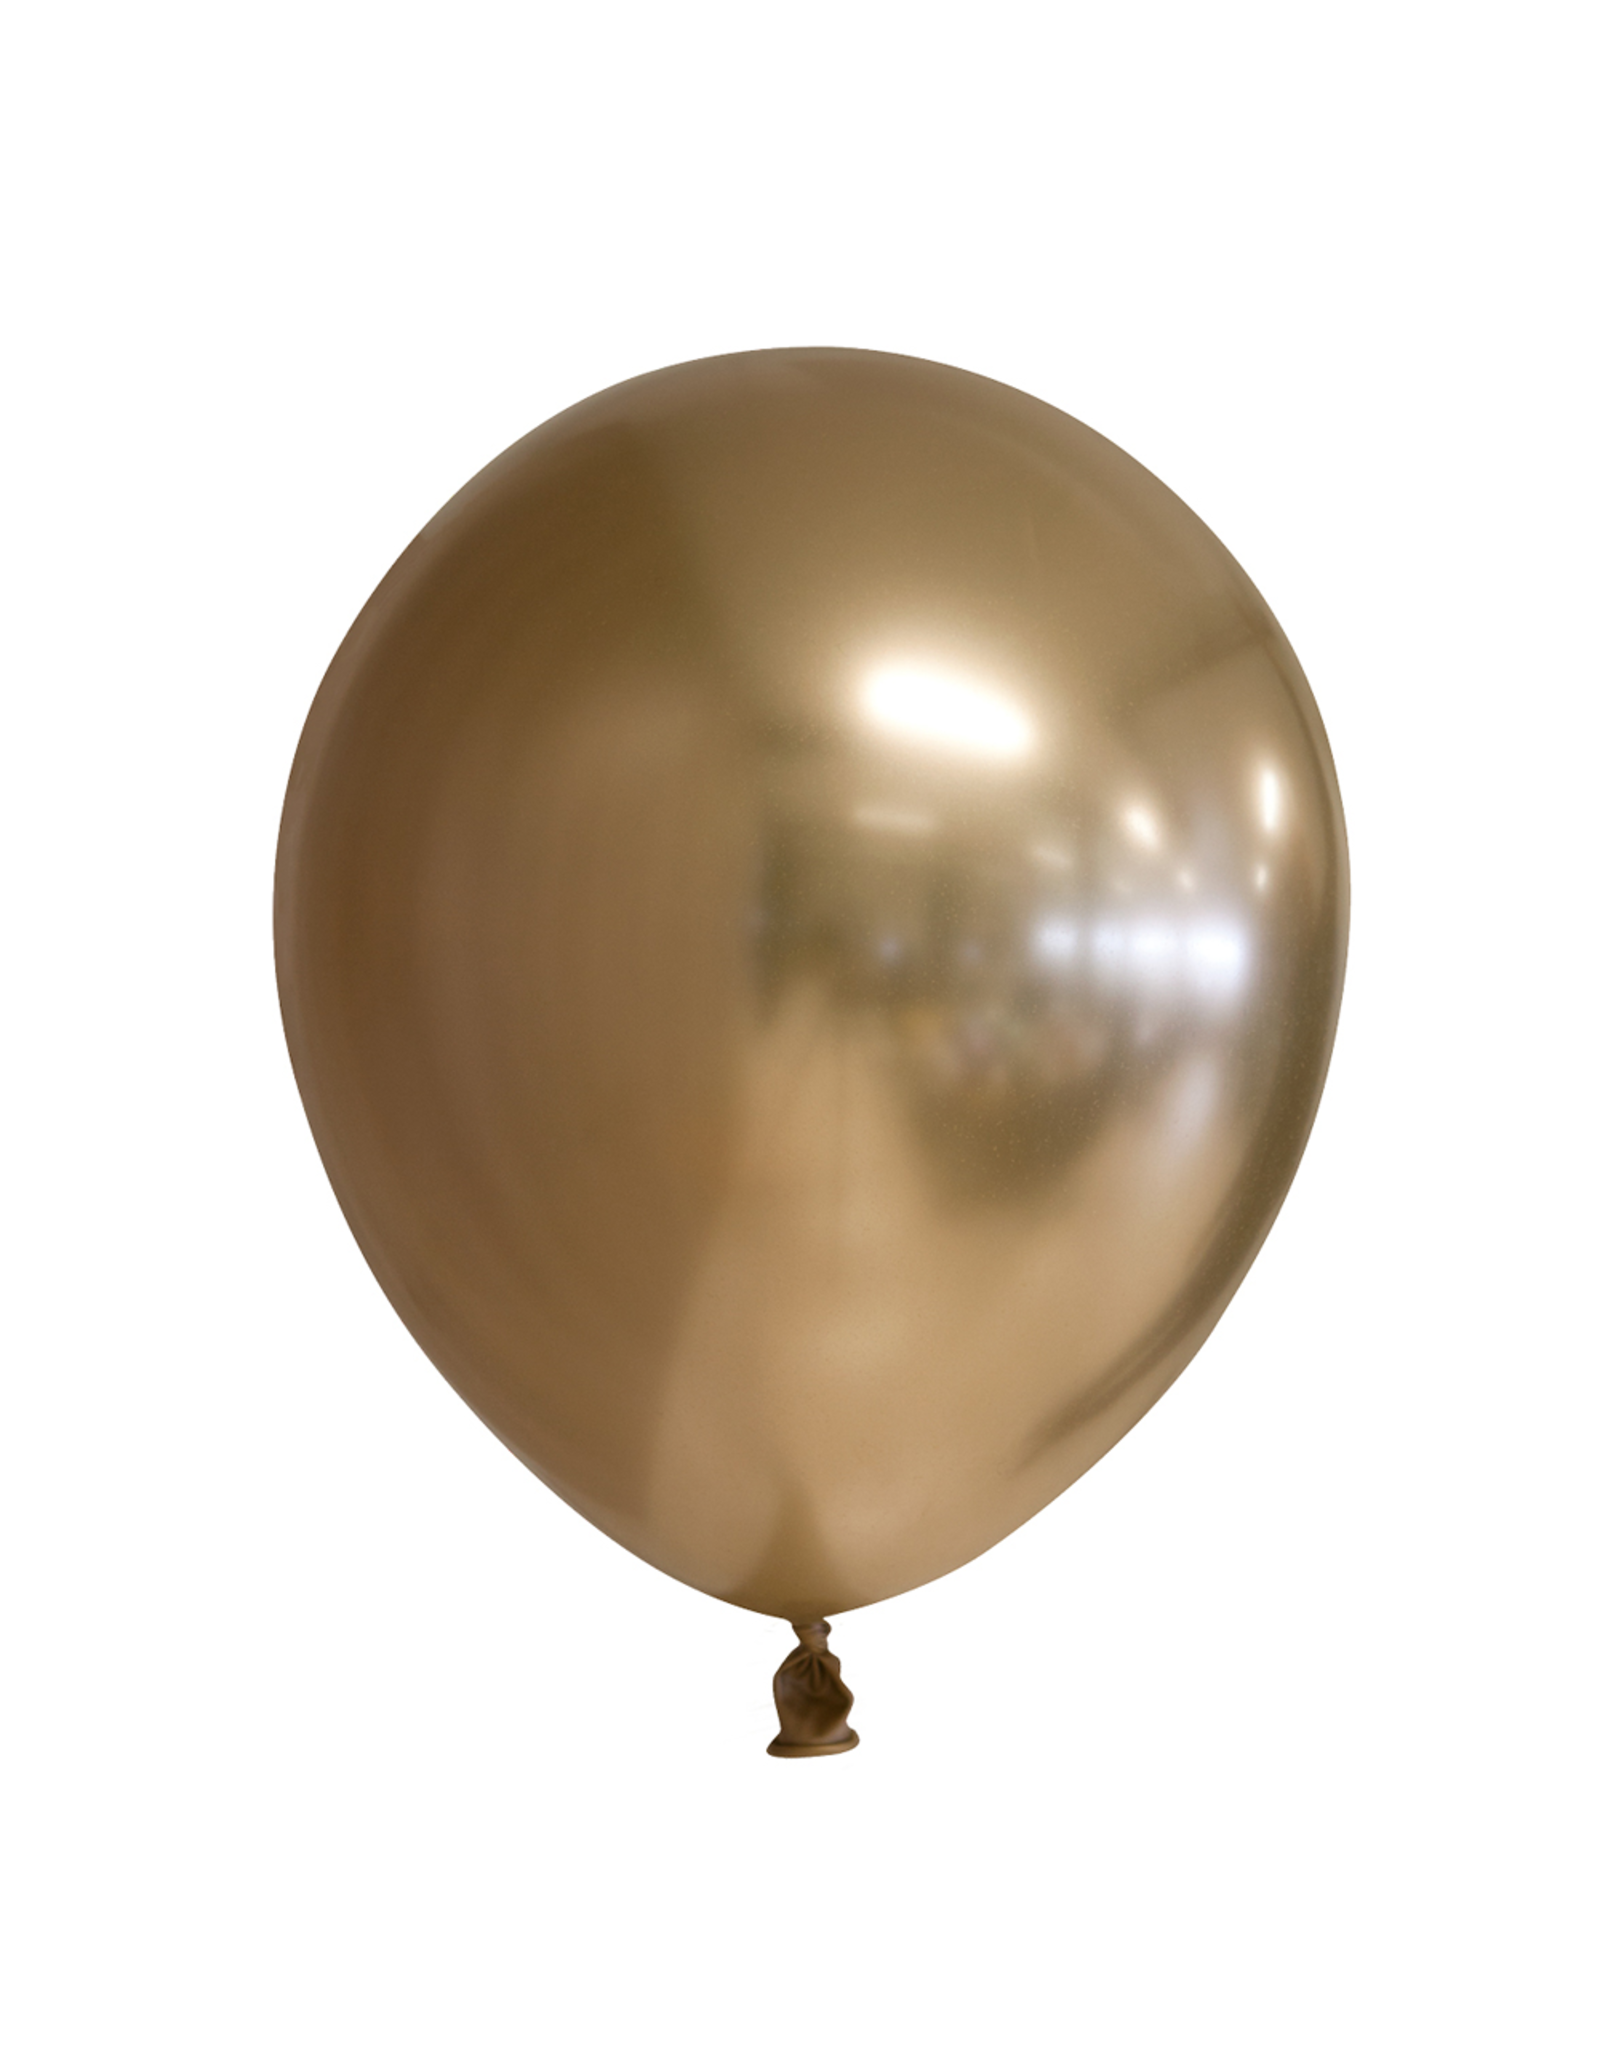 Chroom ballonnen goud 10 stuks